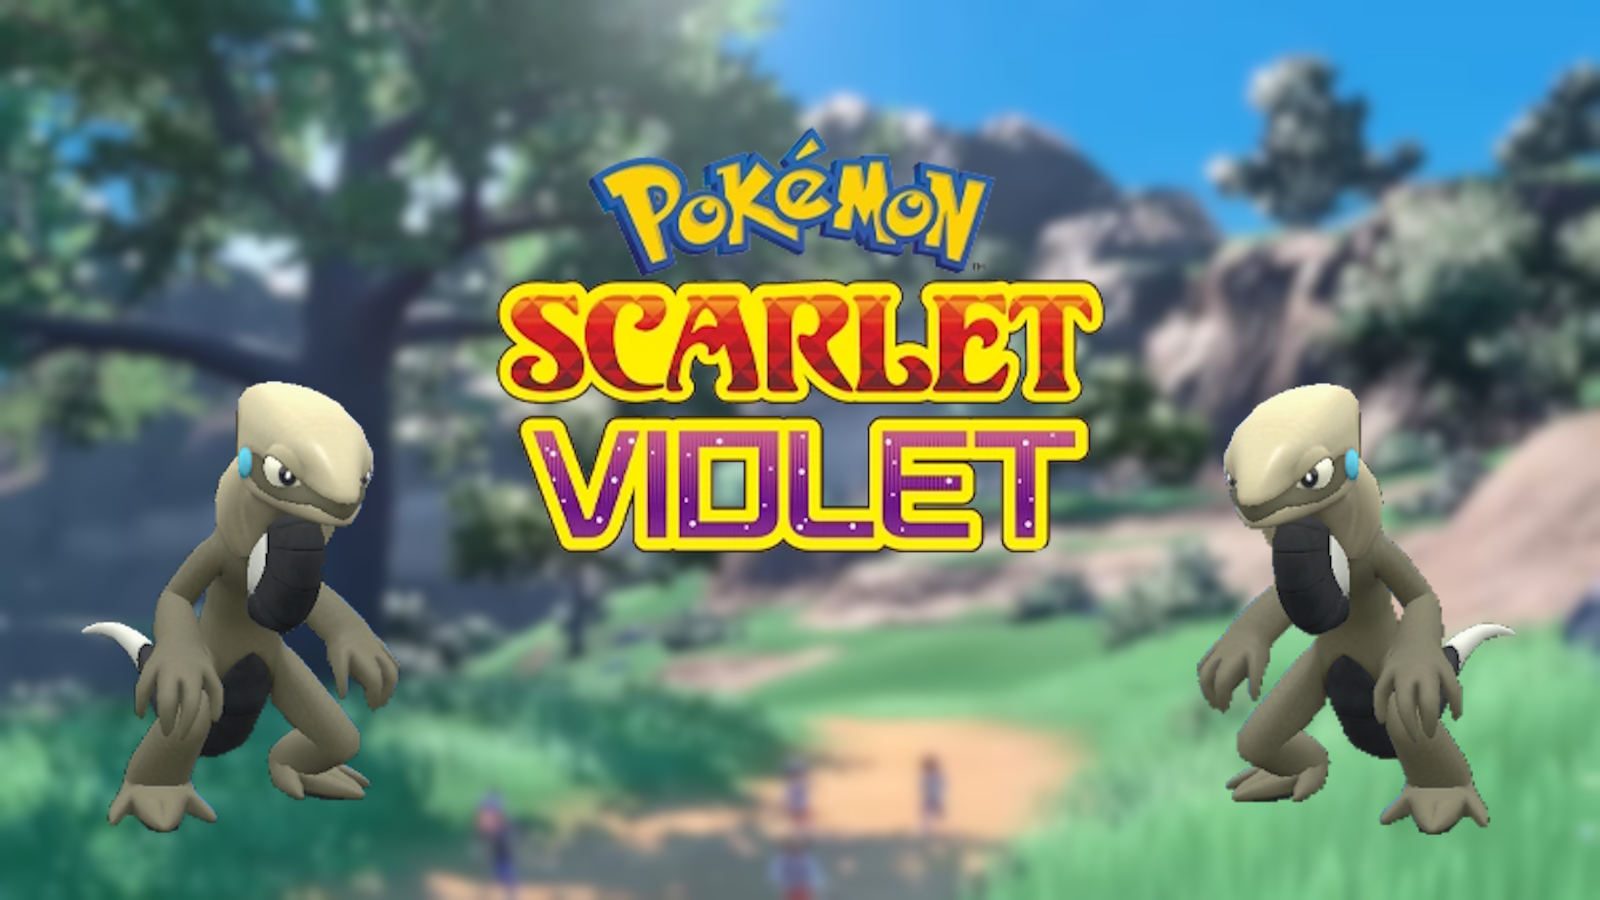 A Pokemon Scarlet & Violet játékos egy őrült dupla fényes találkozást kap másodperc különbséggel